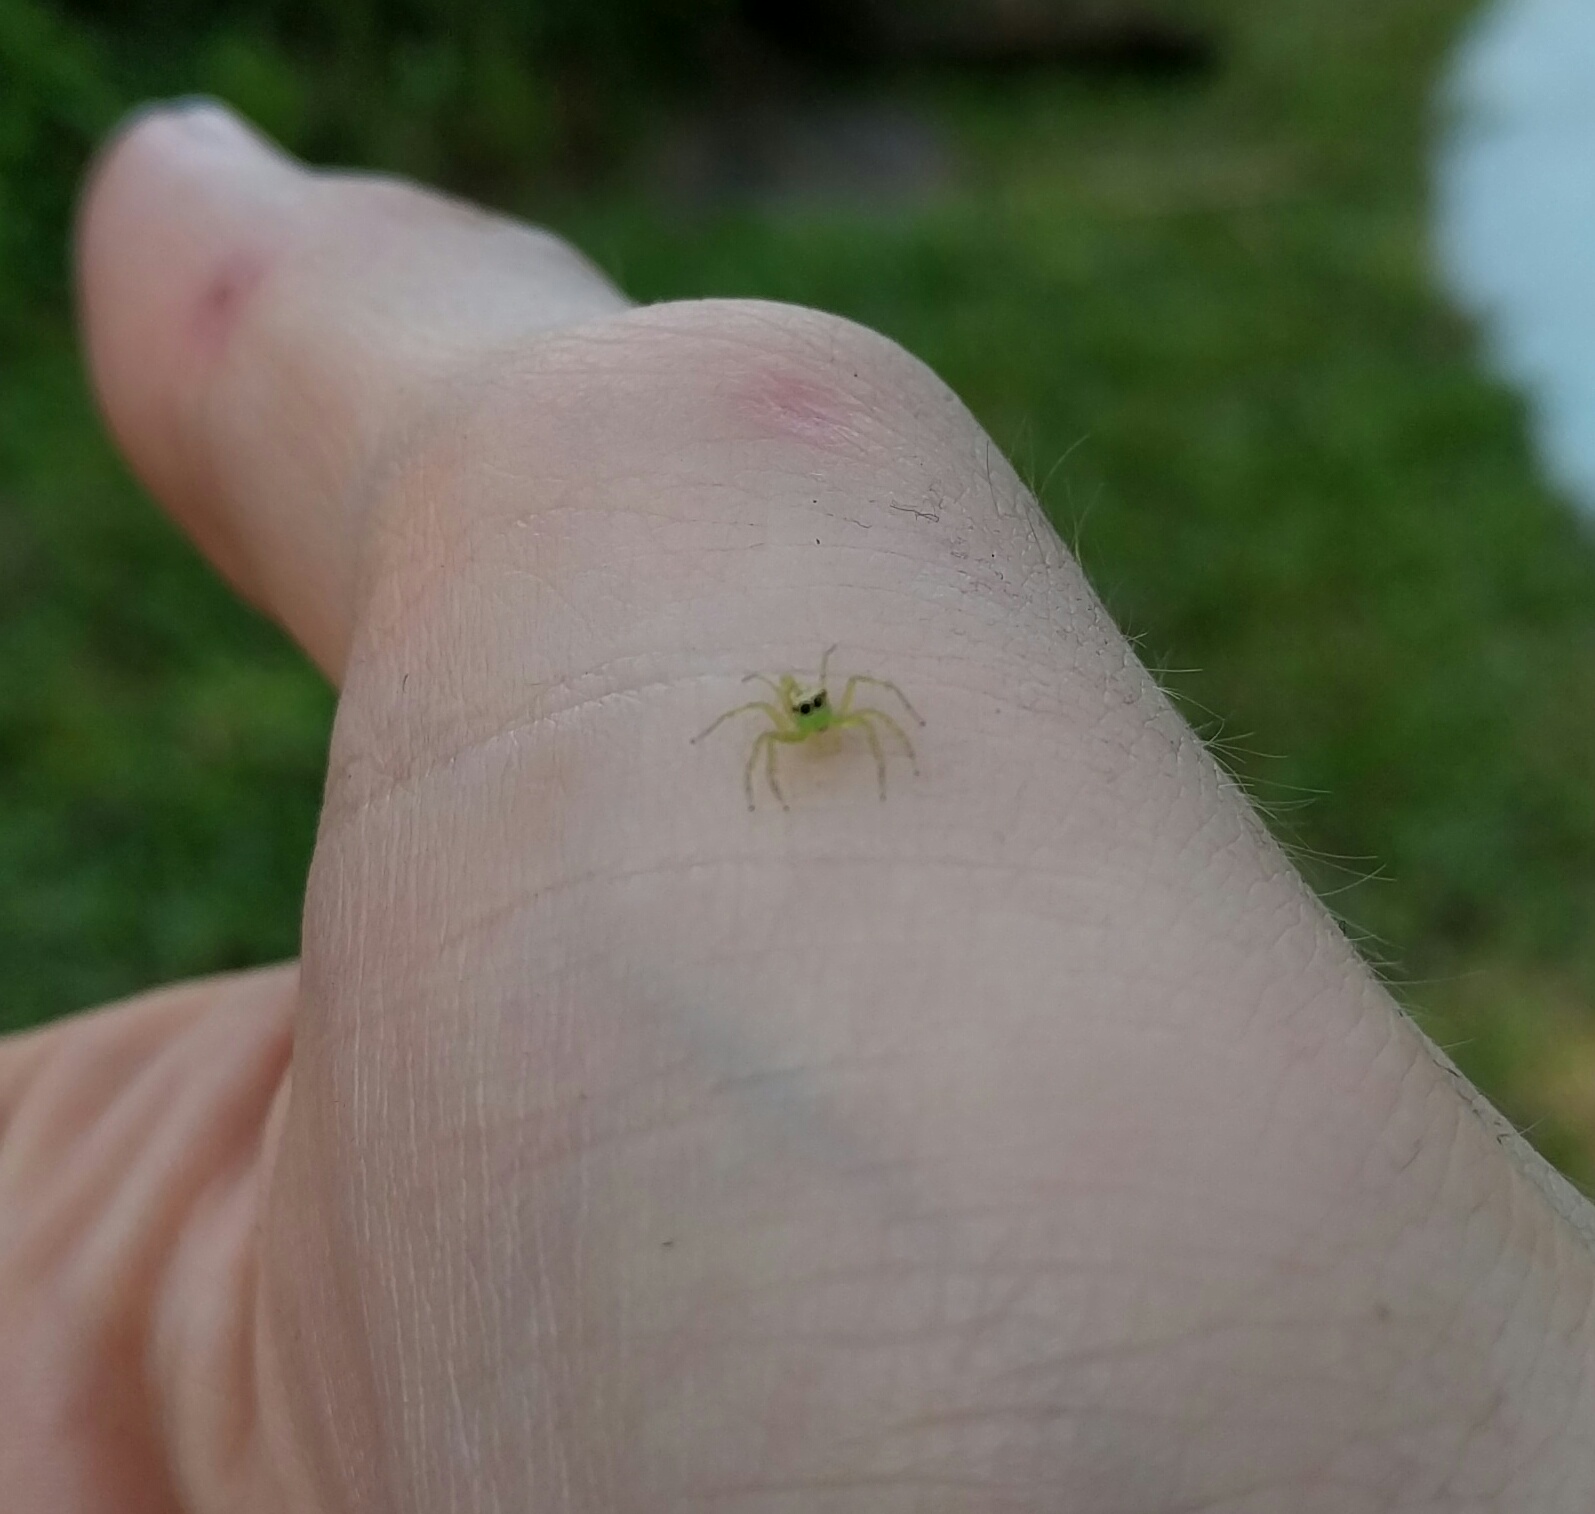 Tiny spider photo